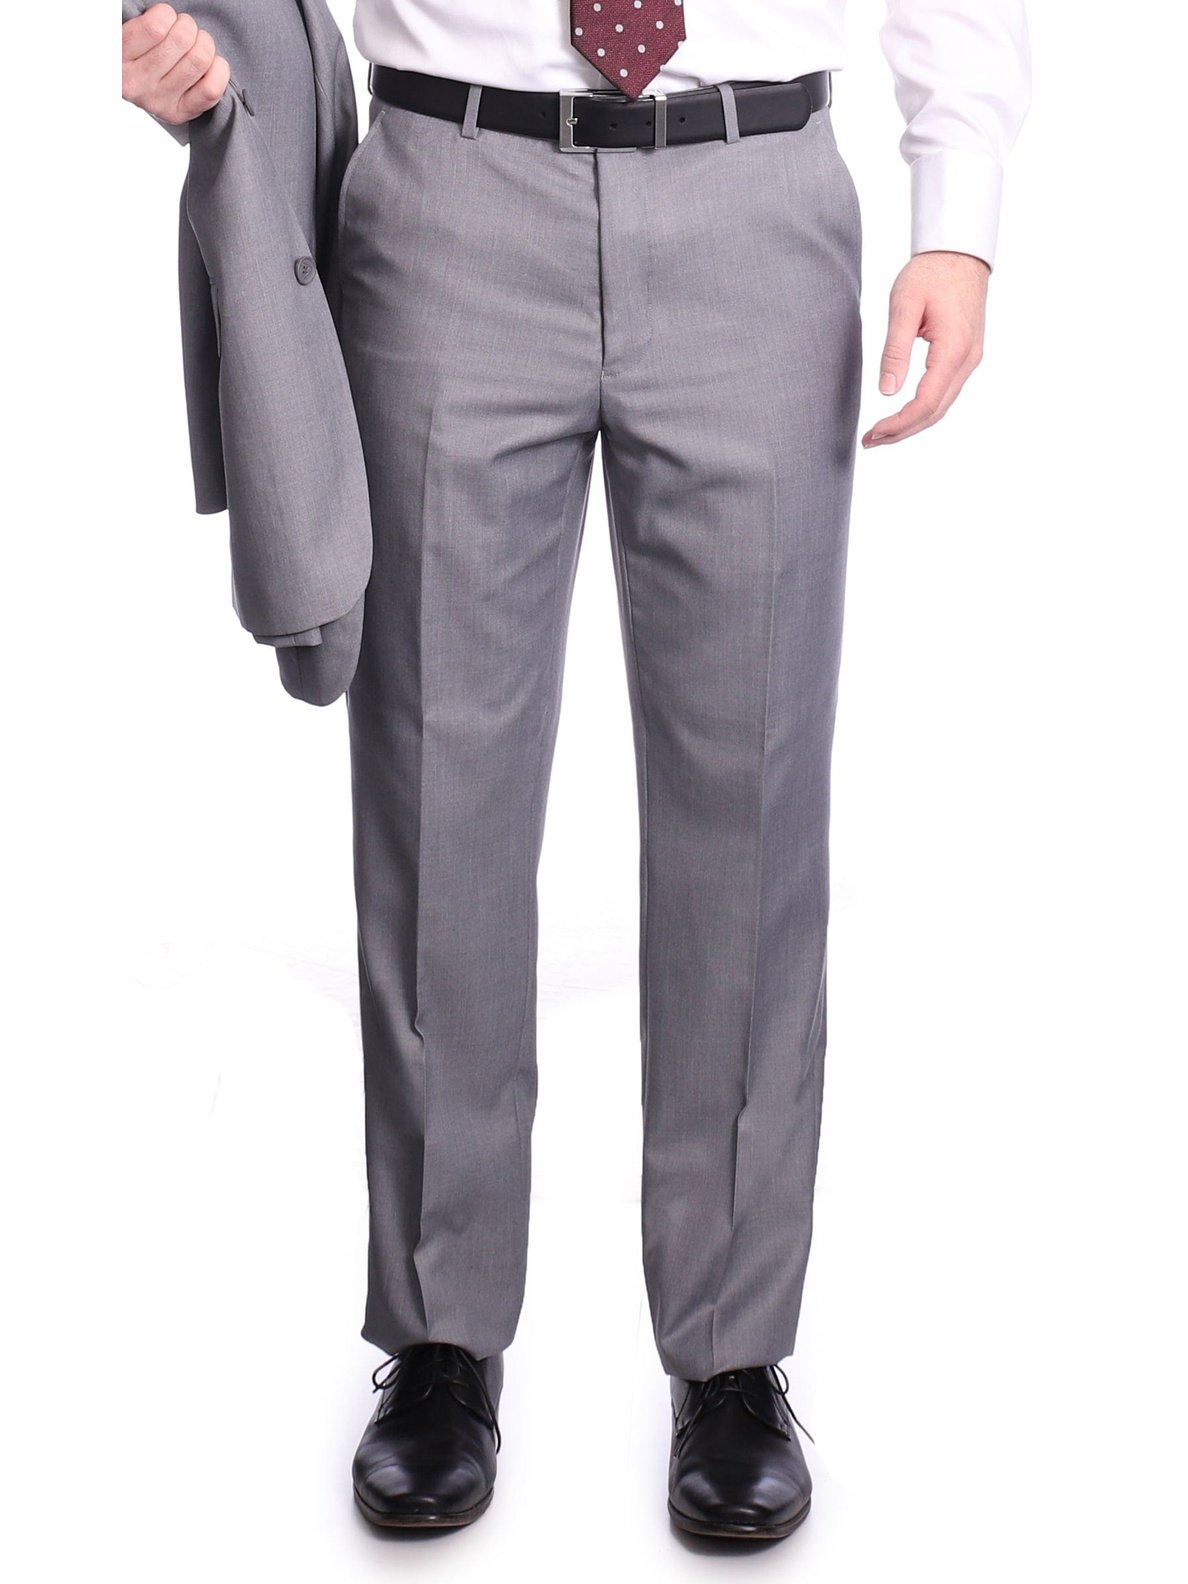 Raphael TWO PIECE SUITS Raphael Men's Slim Fit Light Gray Wool-touch Two Button 2 Piece Suit